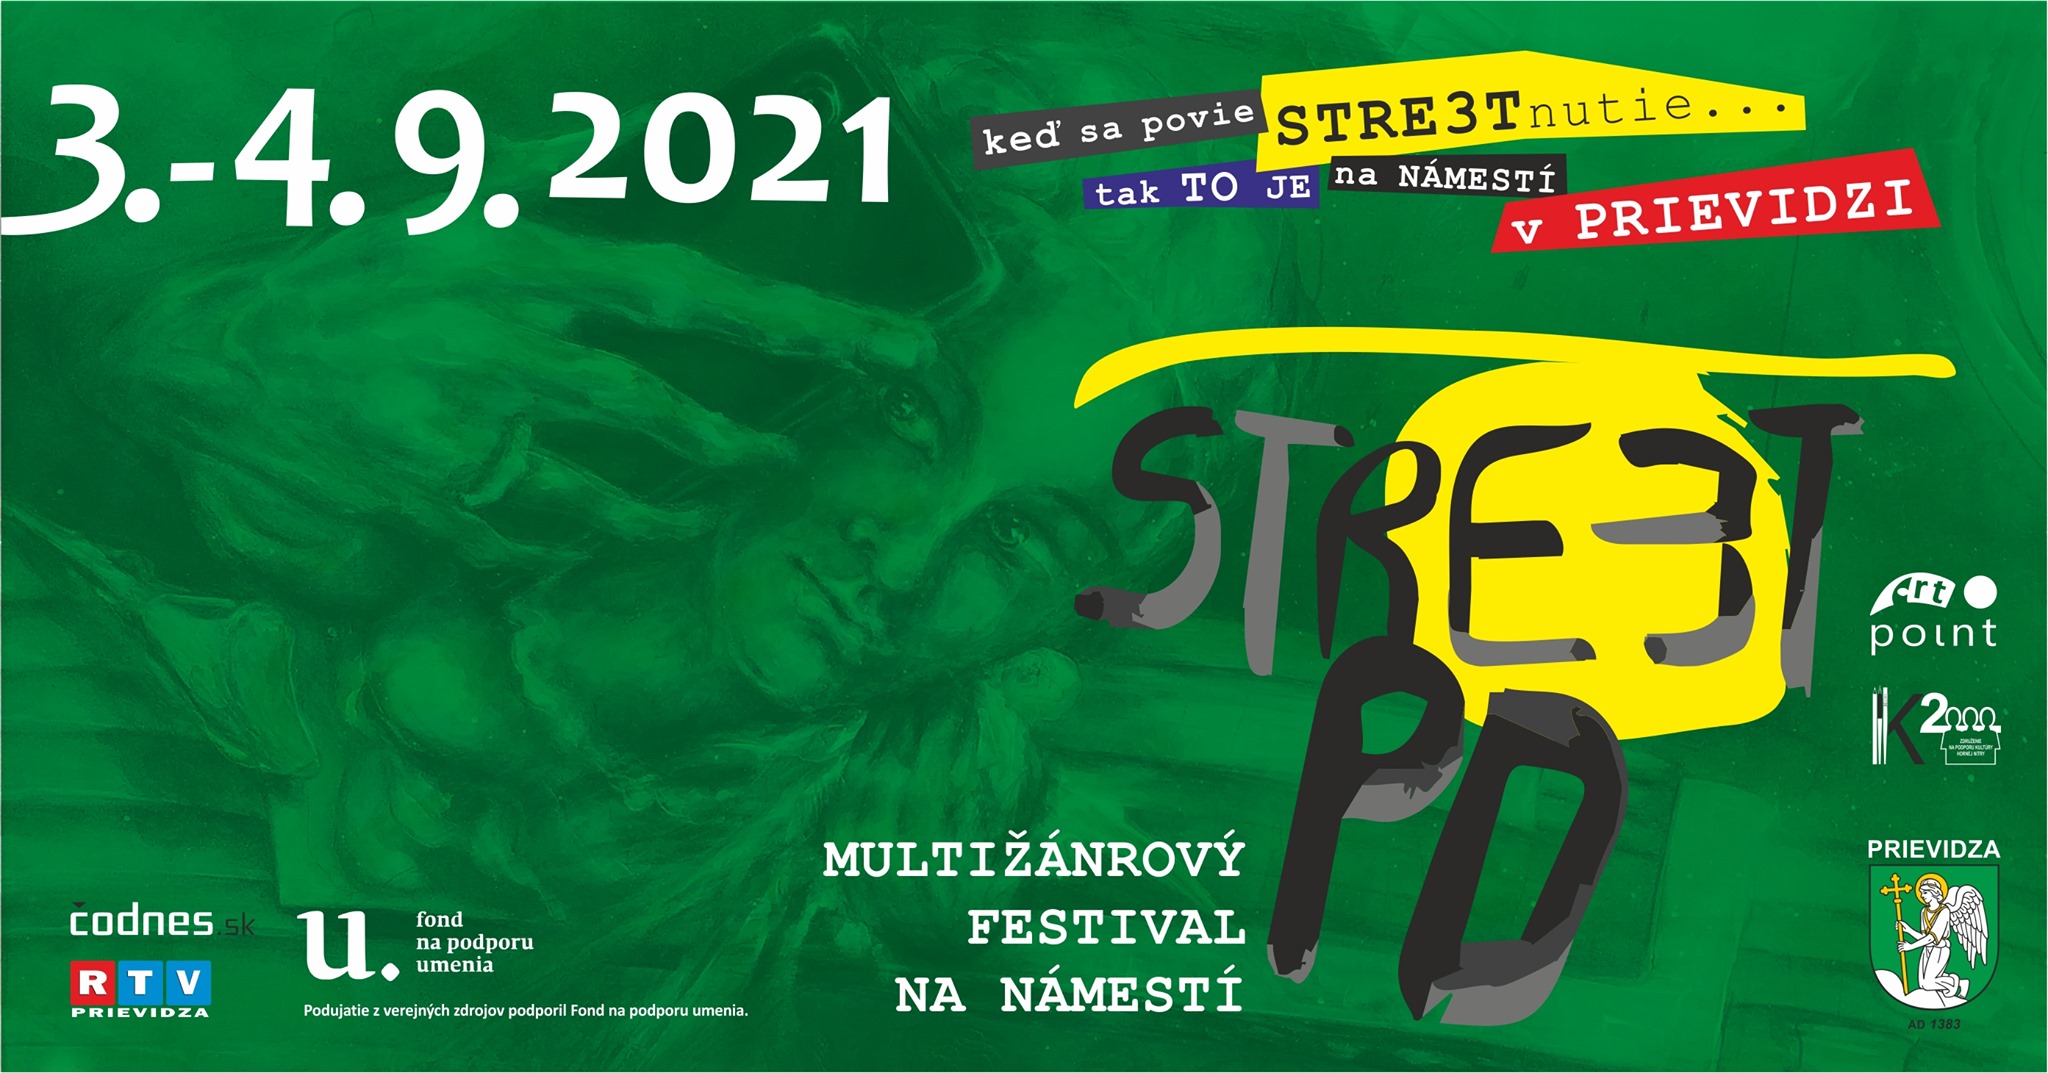 STREET PD 2021 (Stre3t PD)  - Multižánrový festival na námestí v Prievidzi